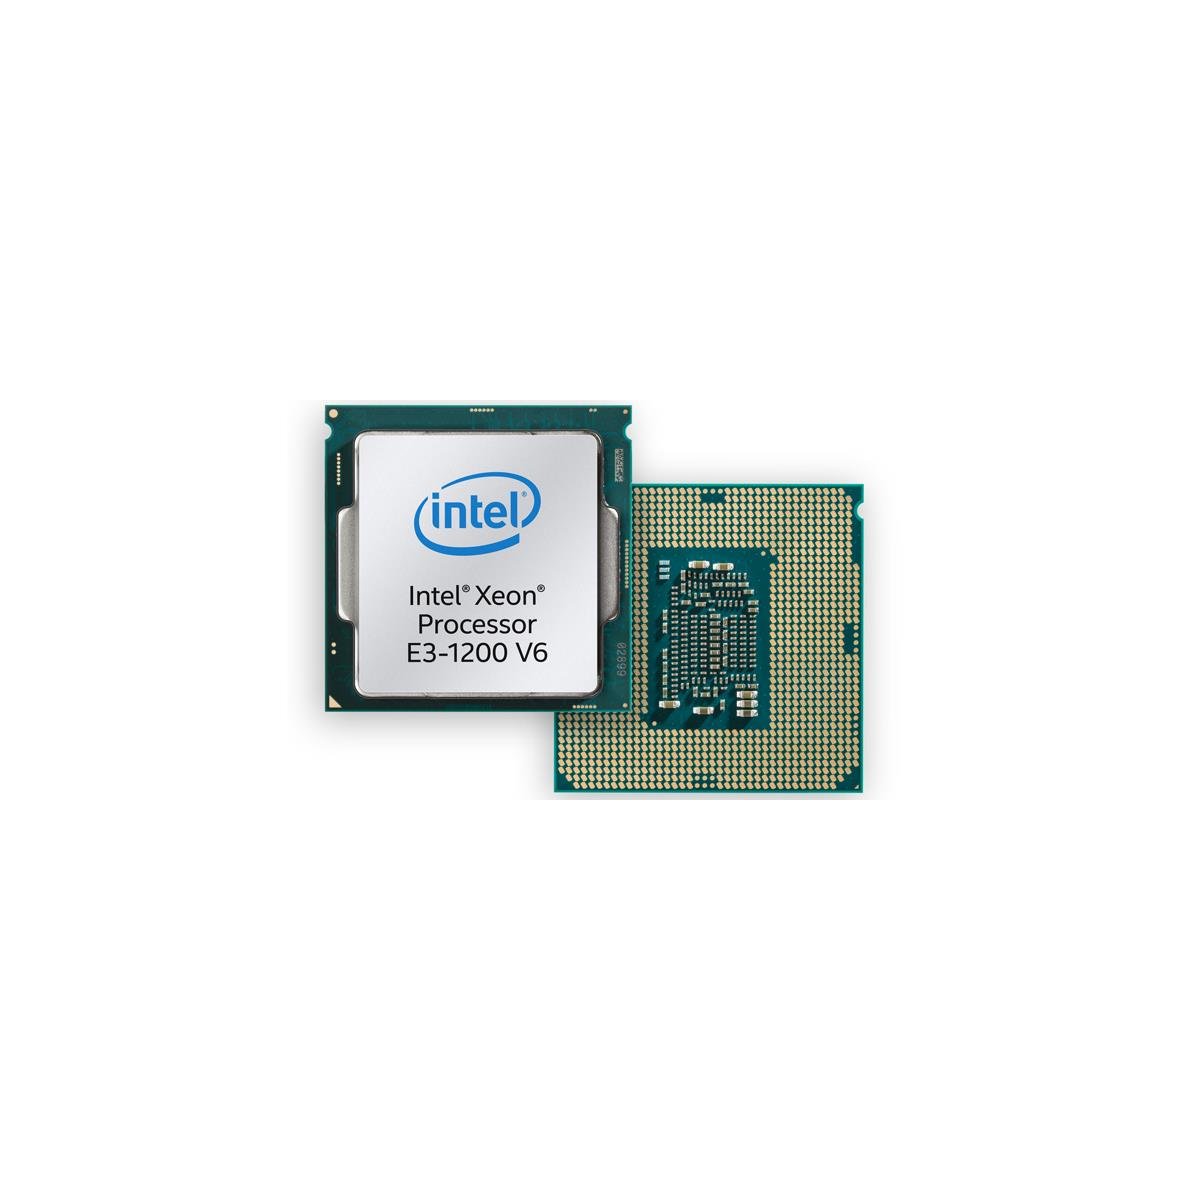 Intel Kaby Lake Xeon E3-1200 Family Takes Flight | HotHardware